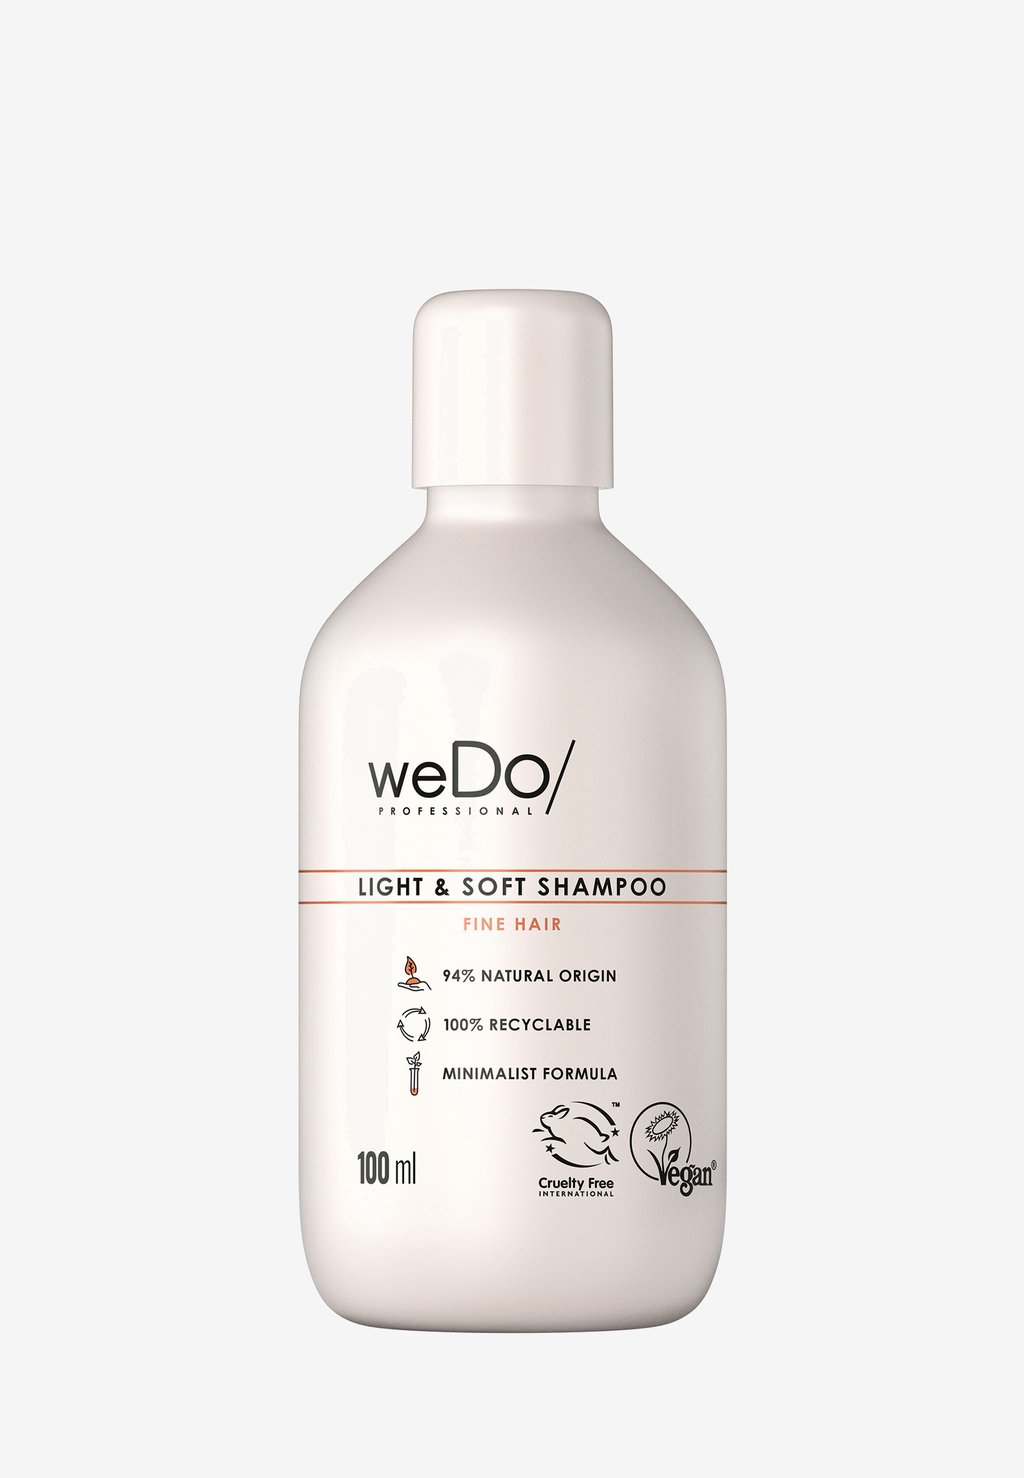 Шампунь Light & Soft Shampoo weDo/ Professional wedo light потолочная светодиодная люстра wedo light вигоне 75330 01 03 04